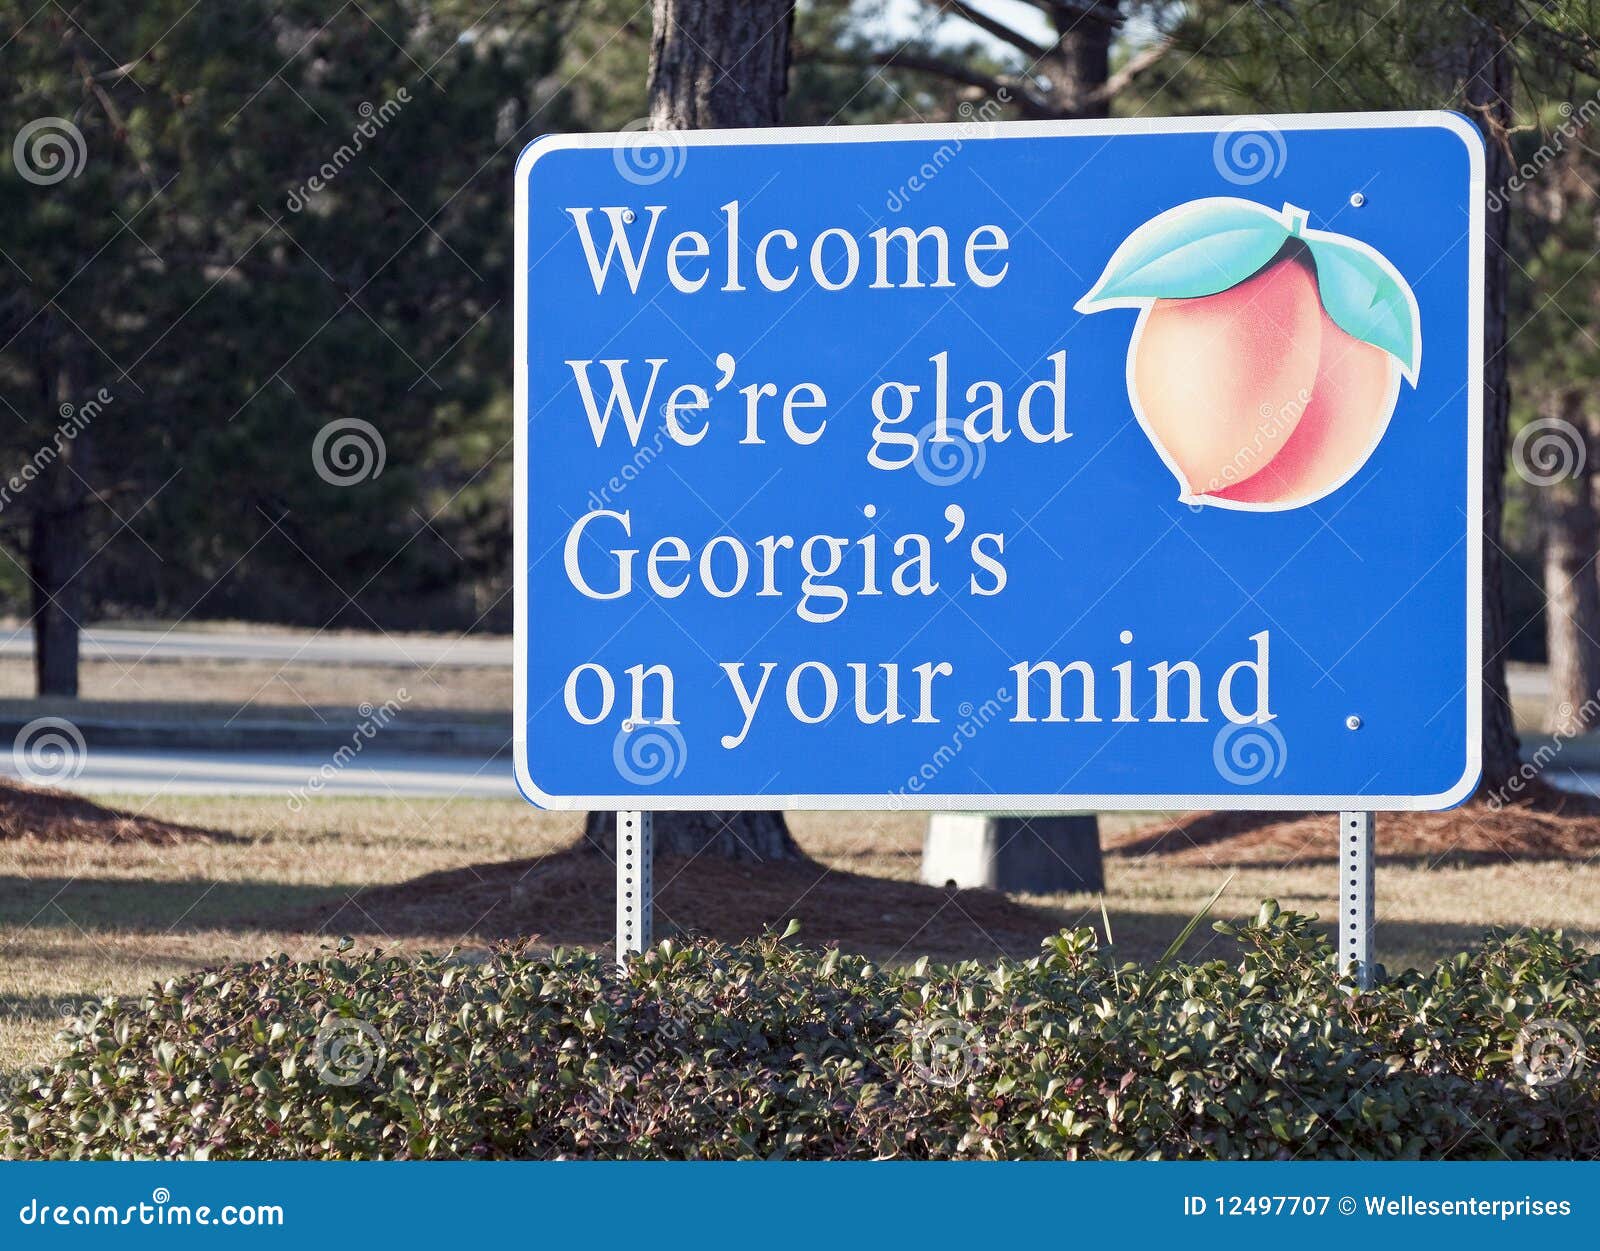 welcome to georgia